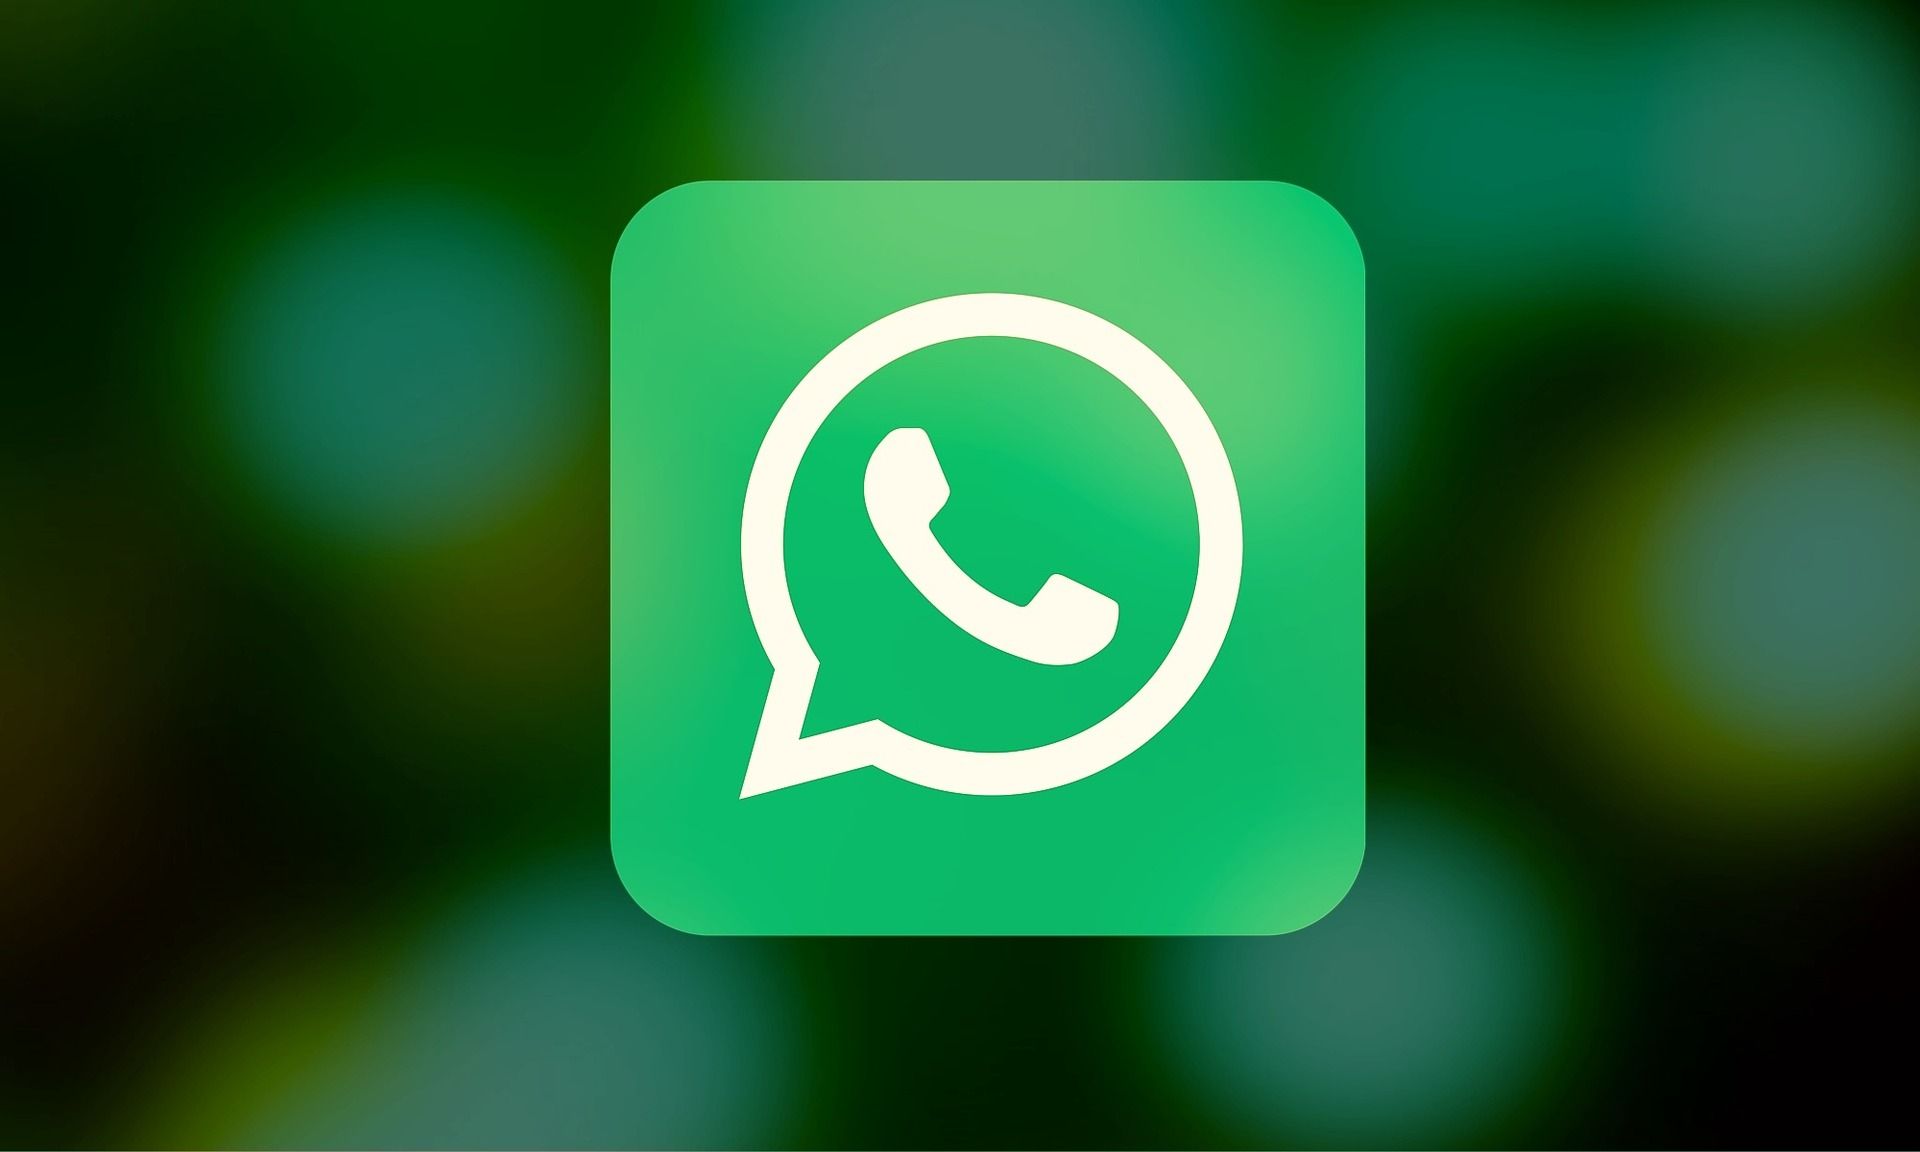 WhatsApp turned green: Why?